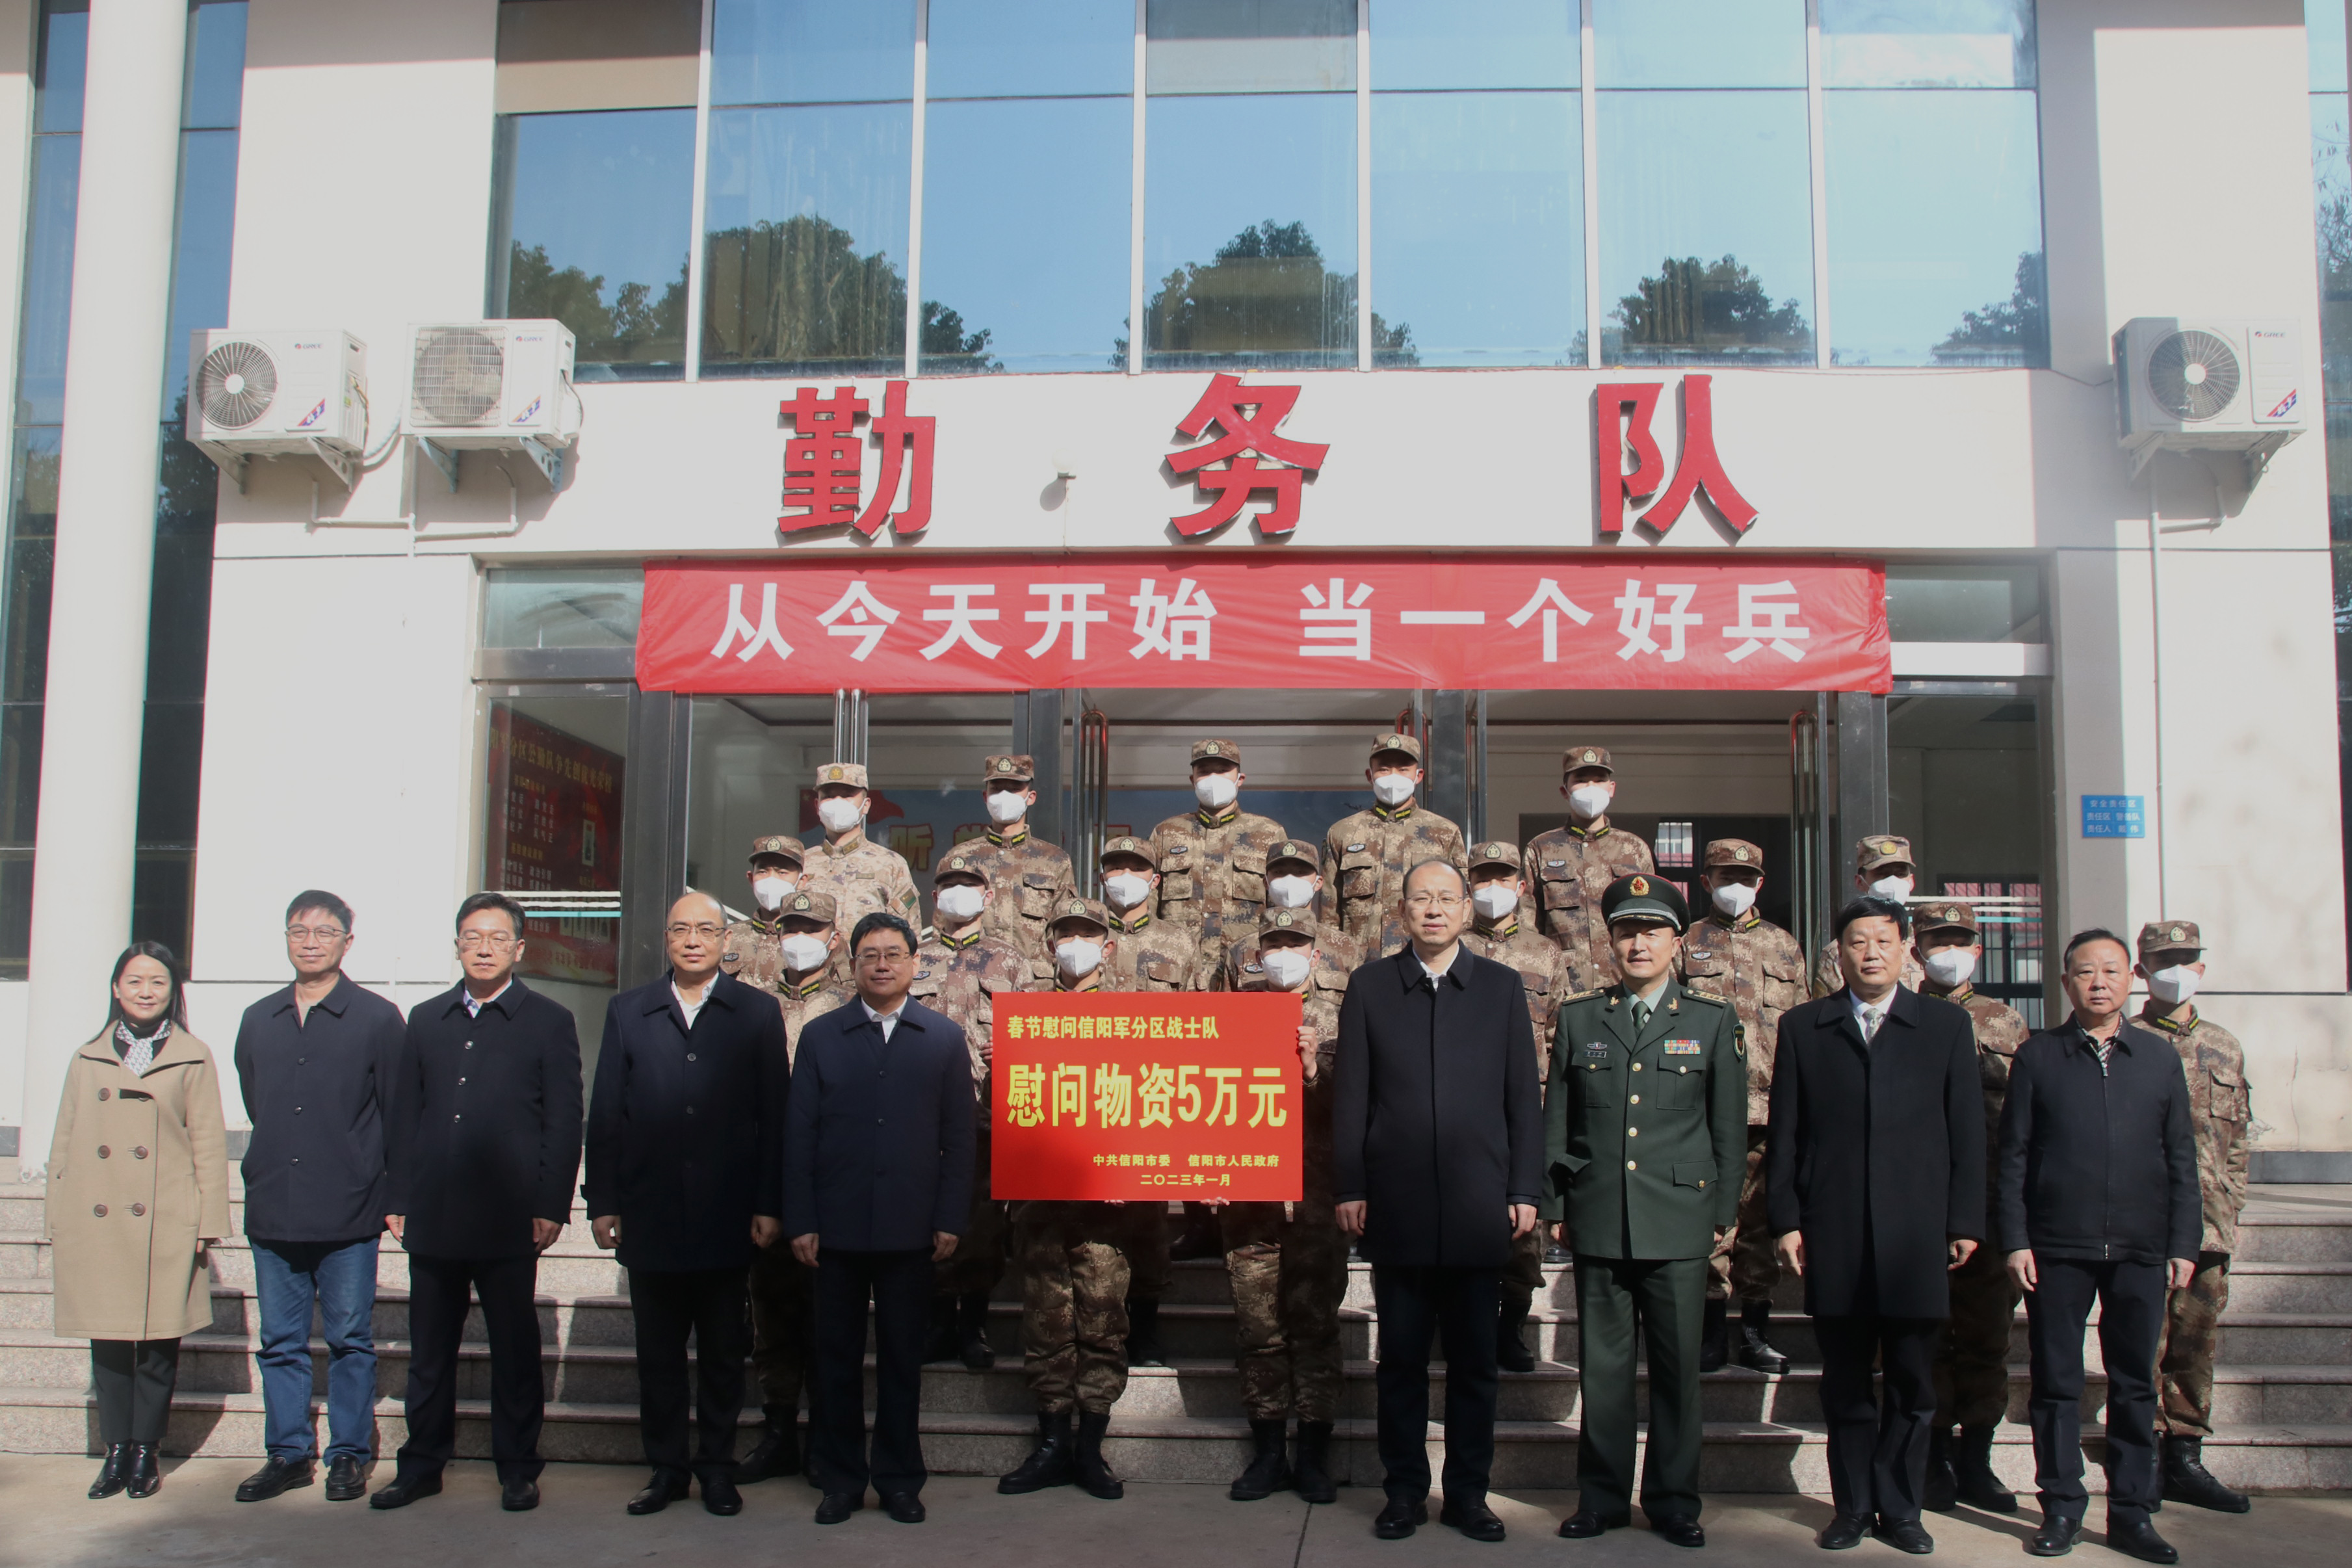 市领导春节分组走访慰问基层连队官兵